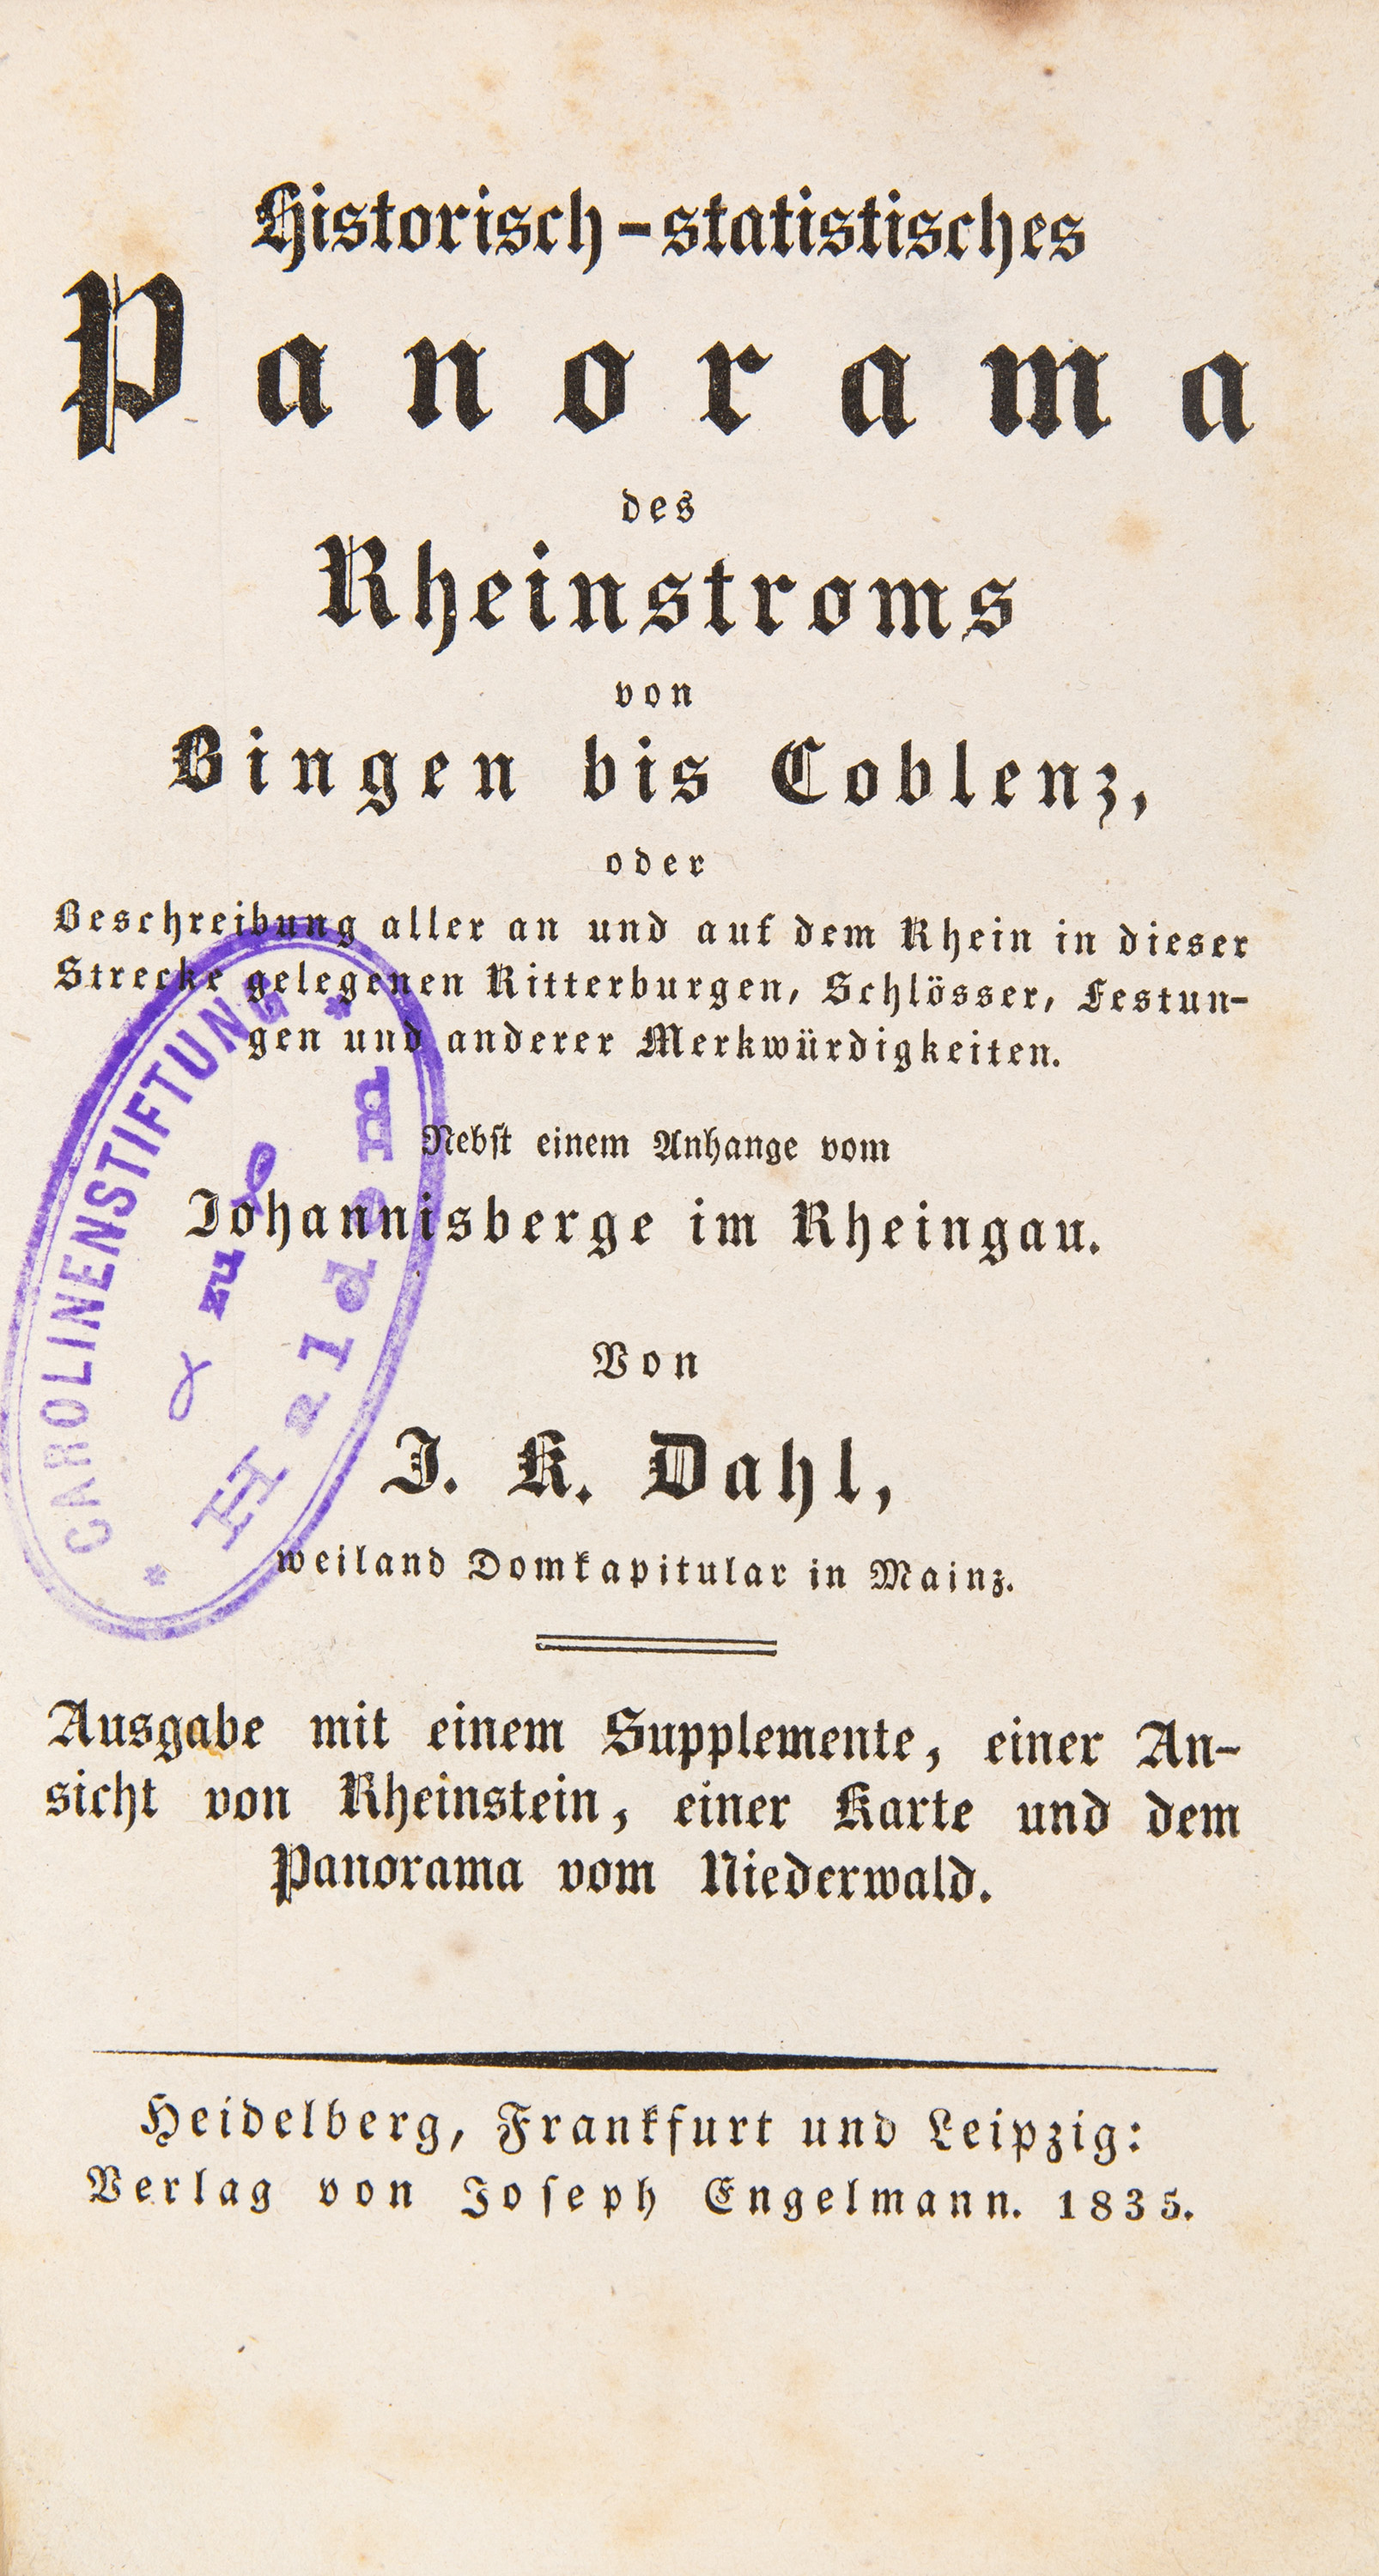 J.K. Dahl, Historisch-statistisches Panorama. Heidelberg u. a. 1835.